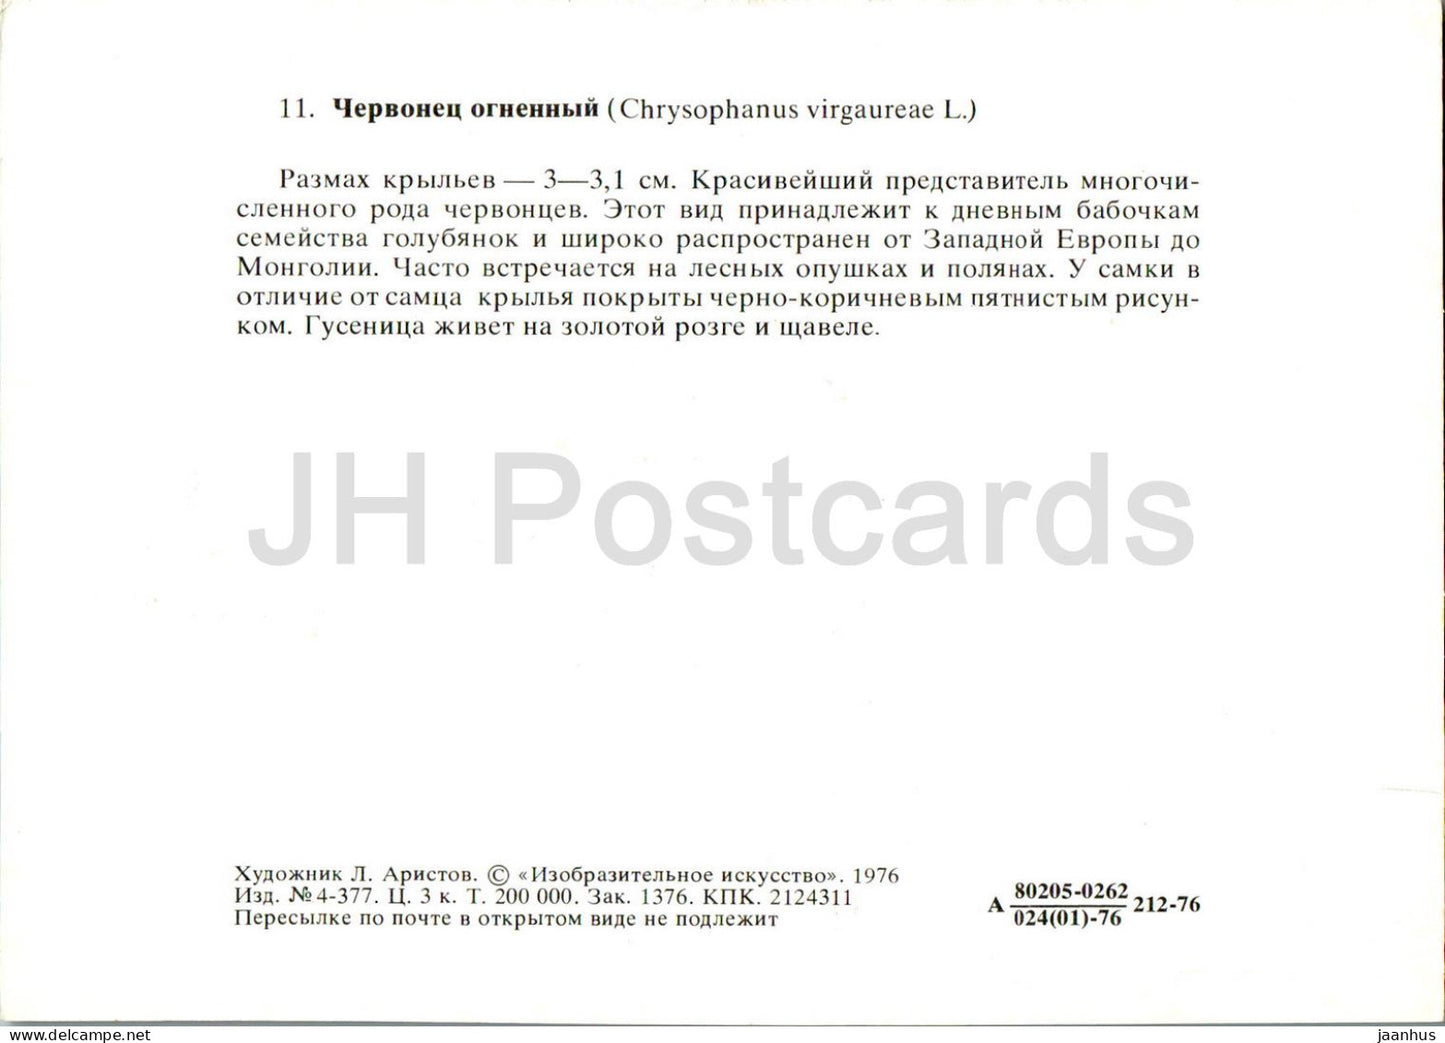 Seltenes Kupfer - Lycaena virgaureae - Schmetterling - Schmetterlinge - 1976 - Russland UdSSR - unbenutzt 